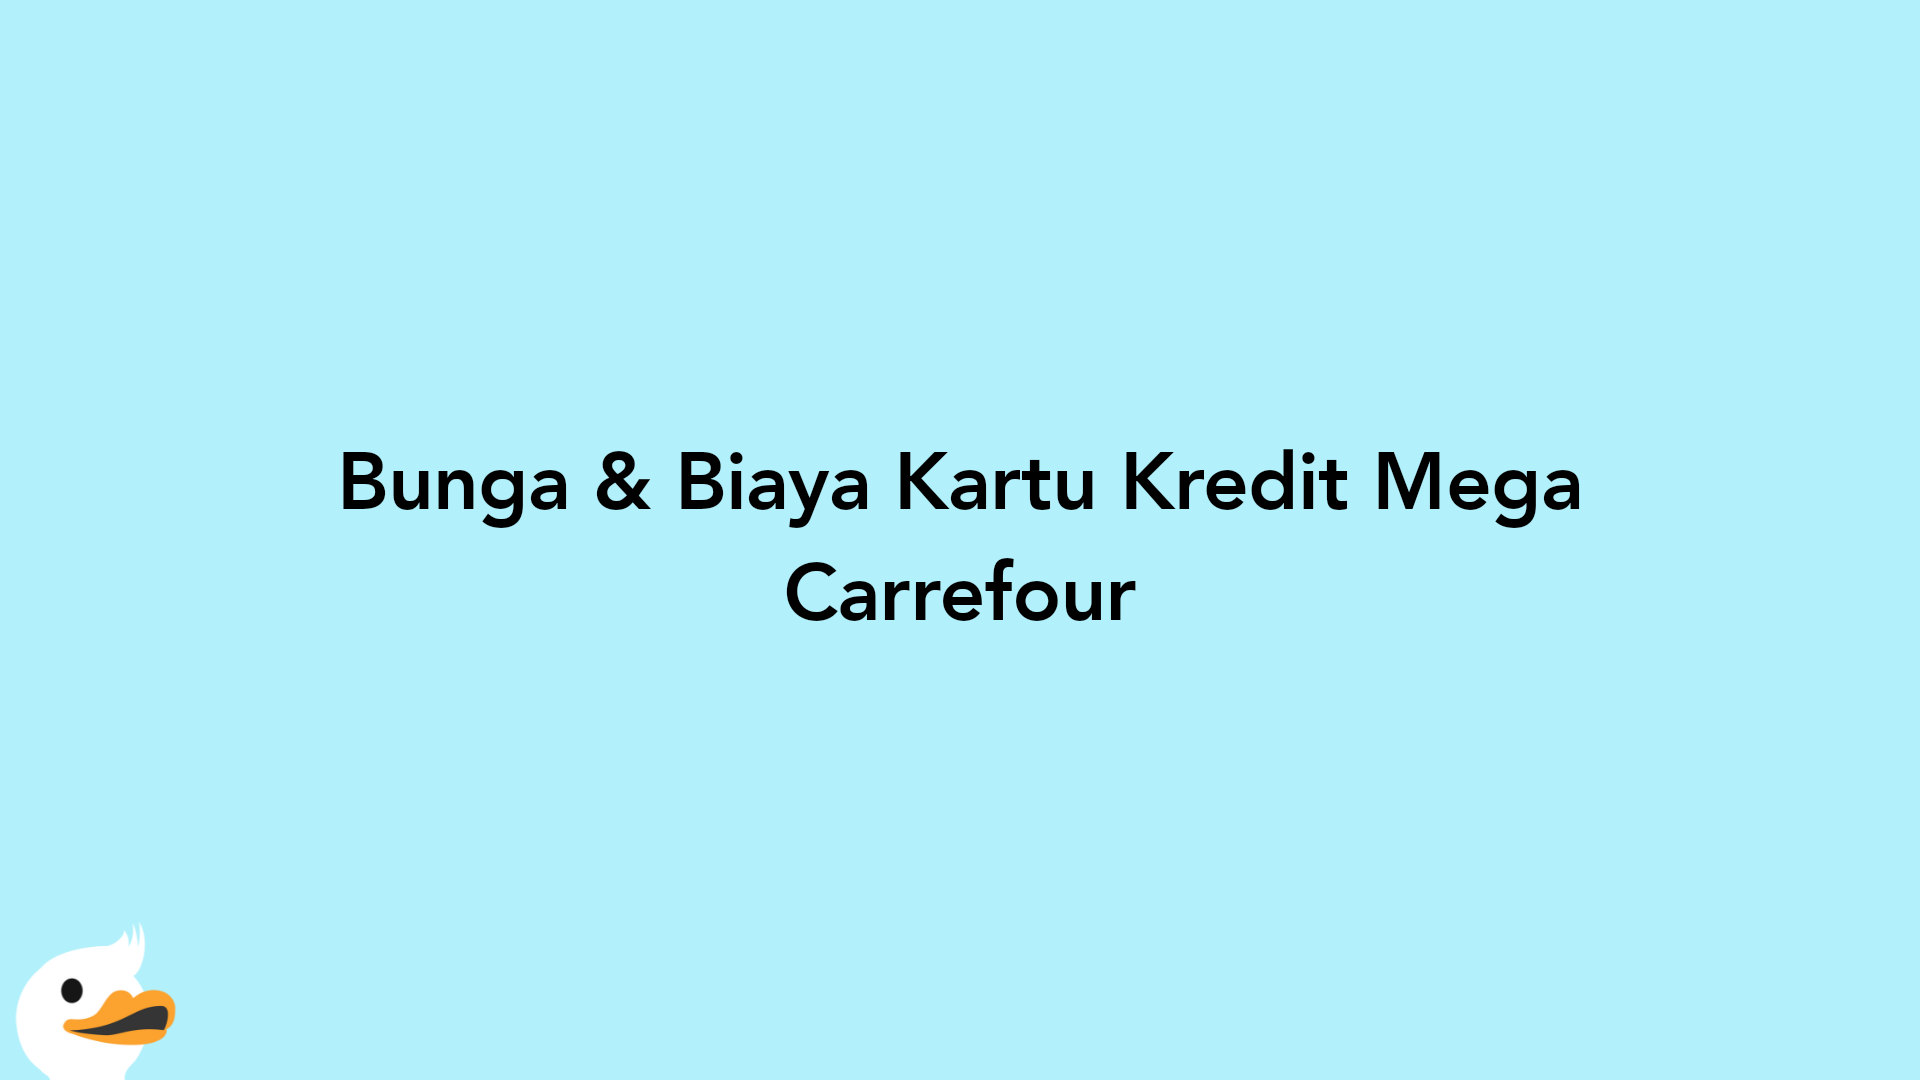 Bunga & Biaya Kartu Kredit Mega Carrefour